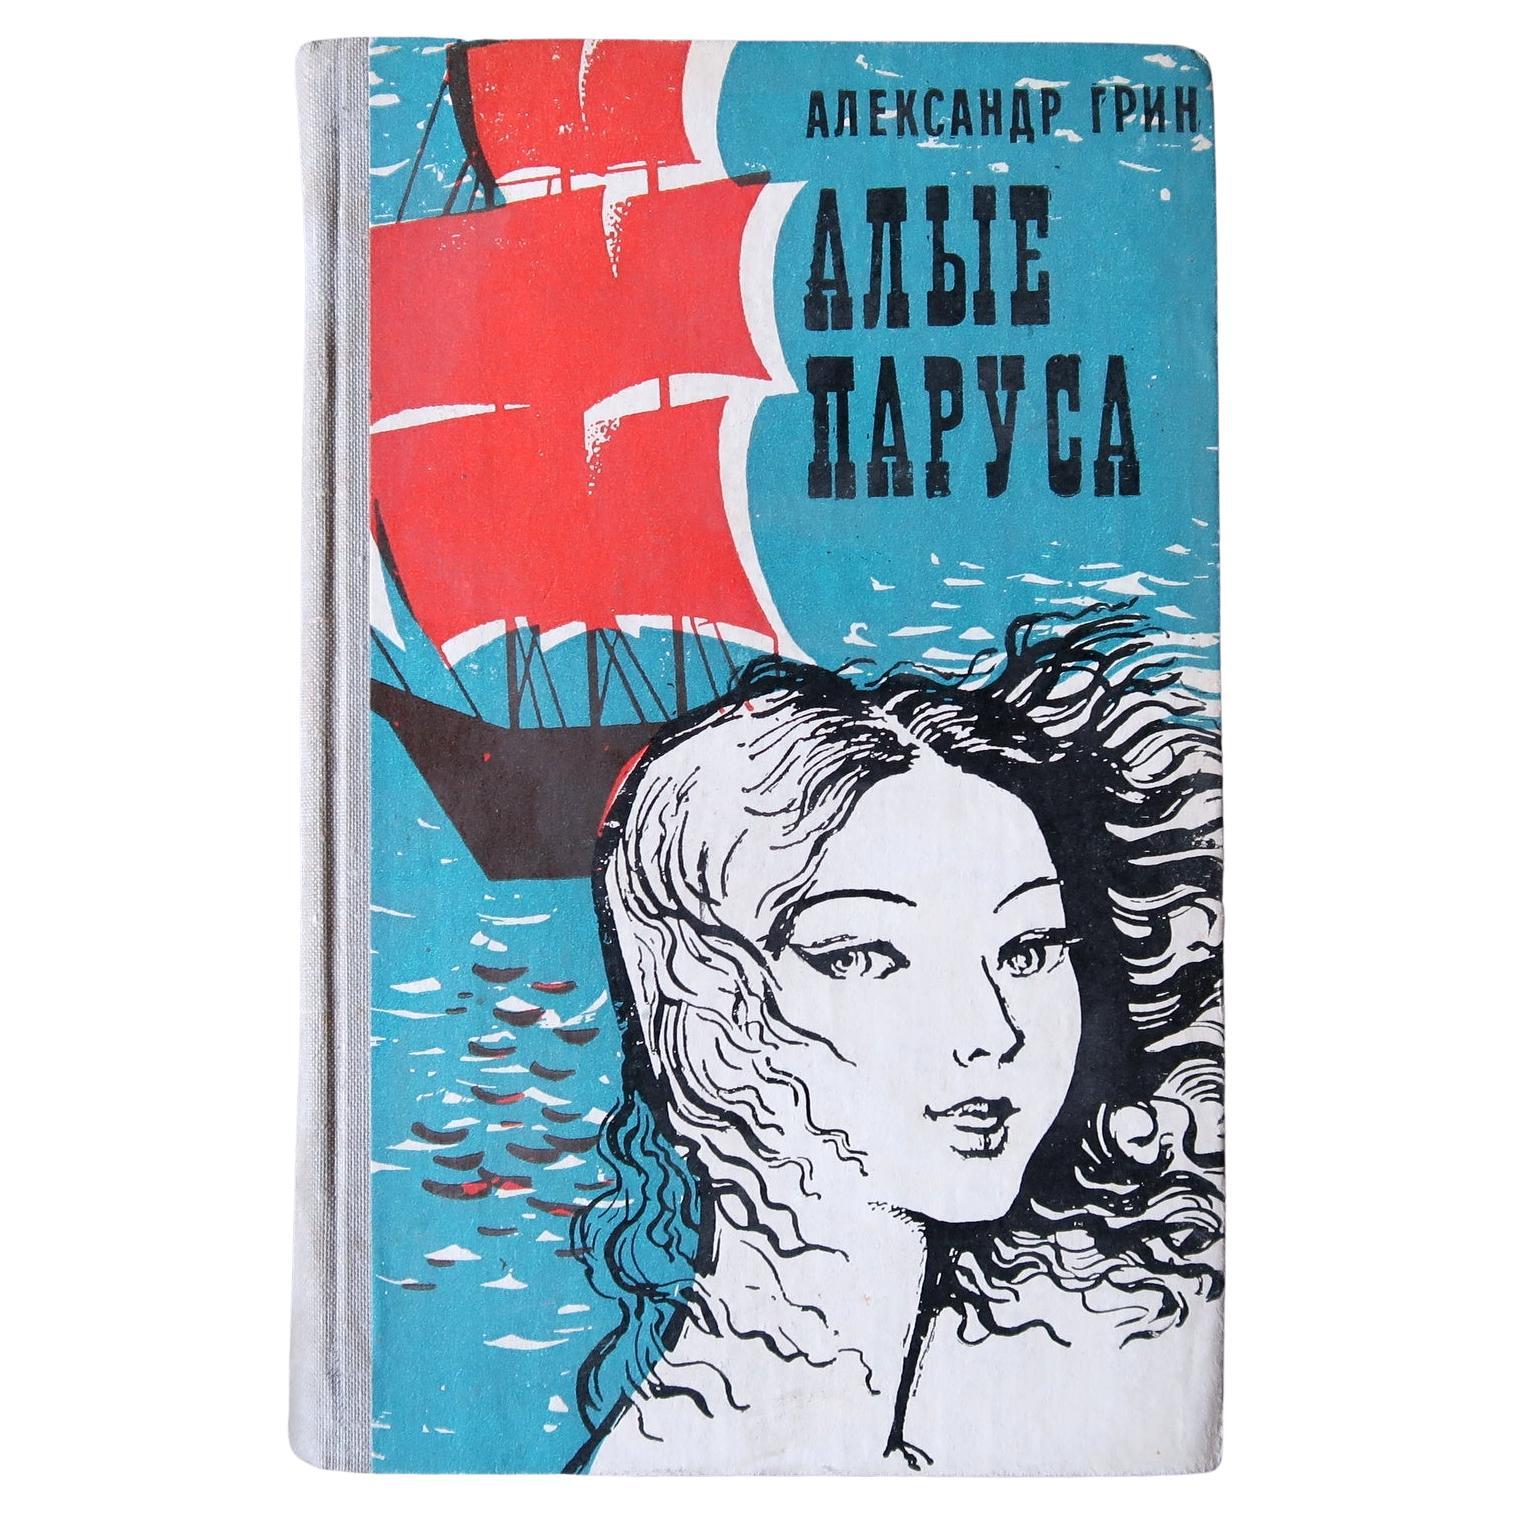 Vintage USSR Book: 'Crimson Sails' by Alexander Green, 1J120